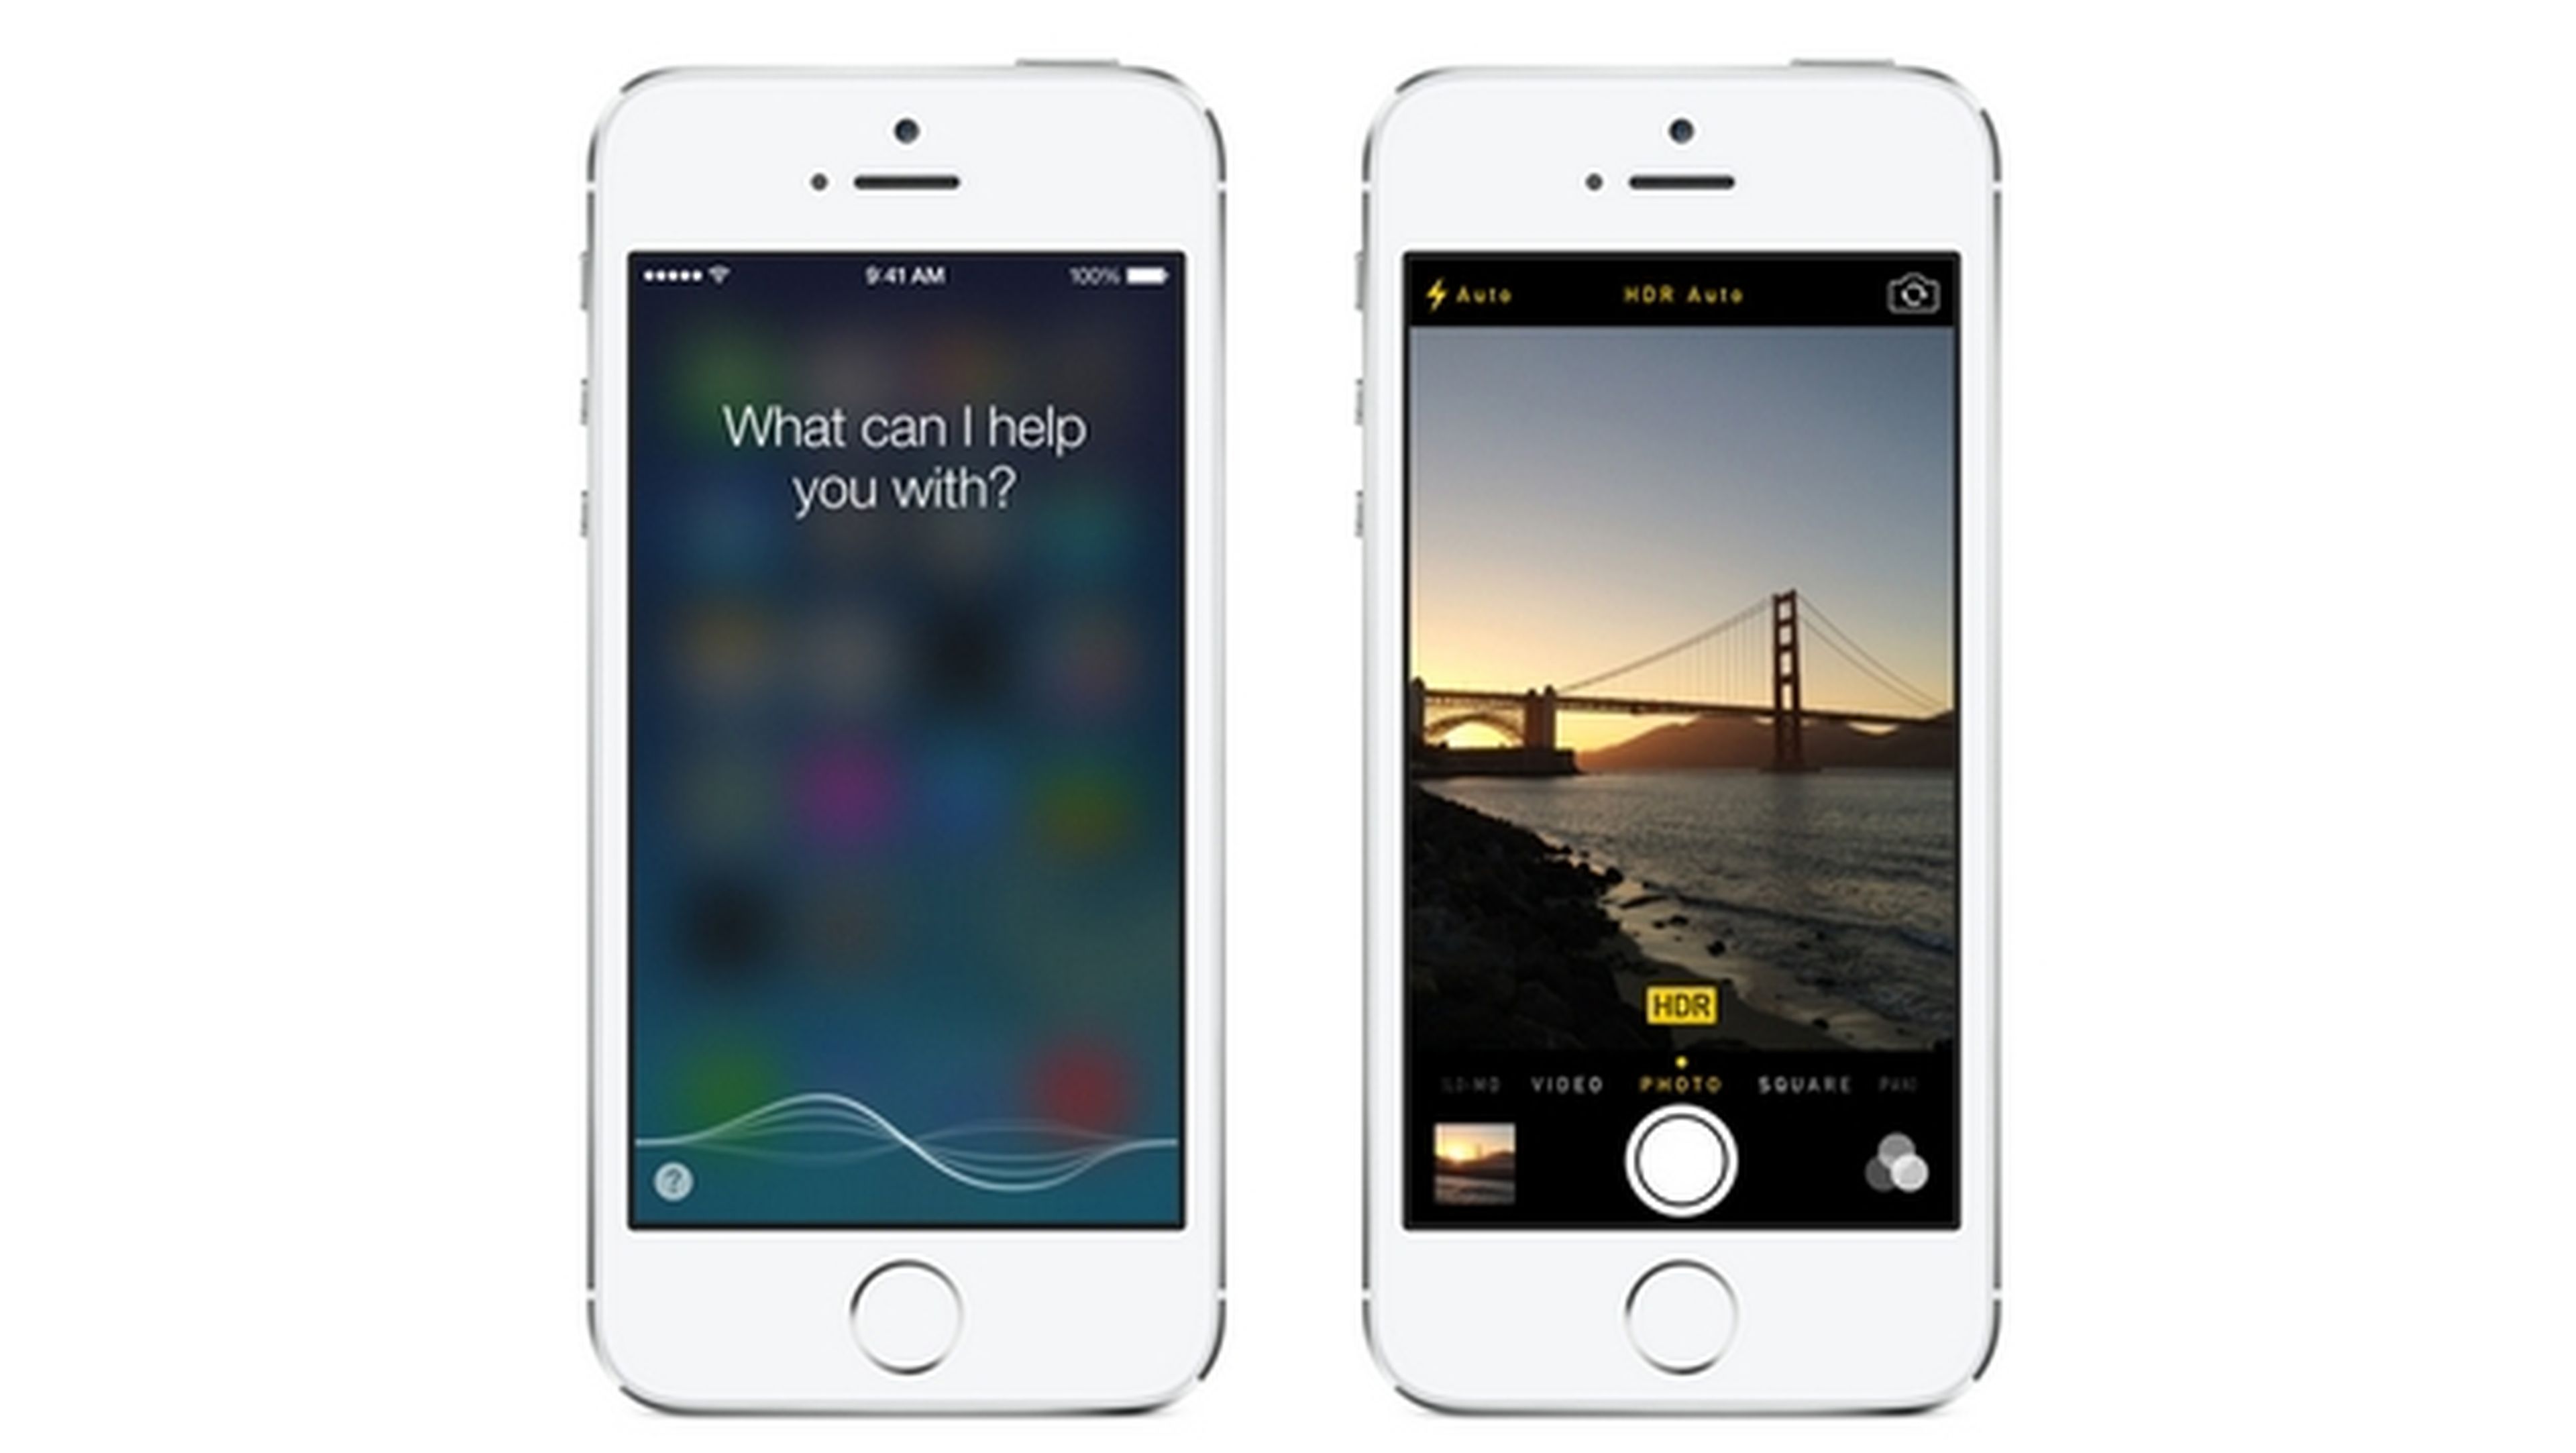 Actualización iOS 7.1 ya disponible, con corrección de bugs y CarPlay